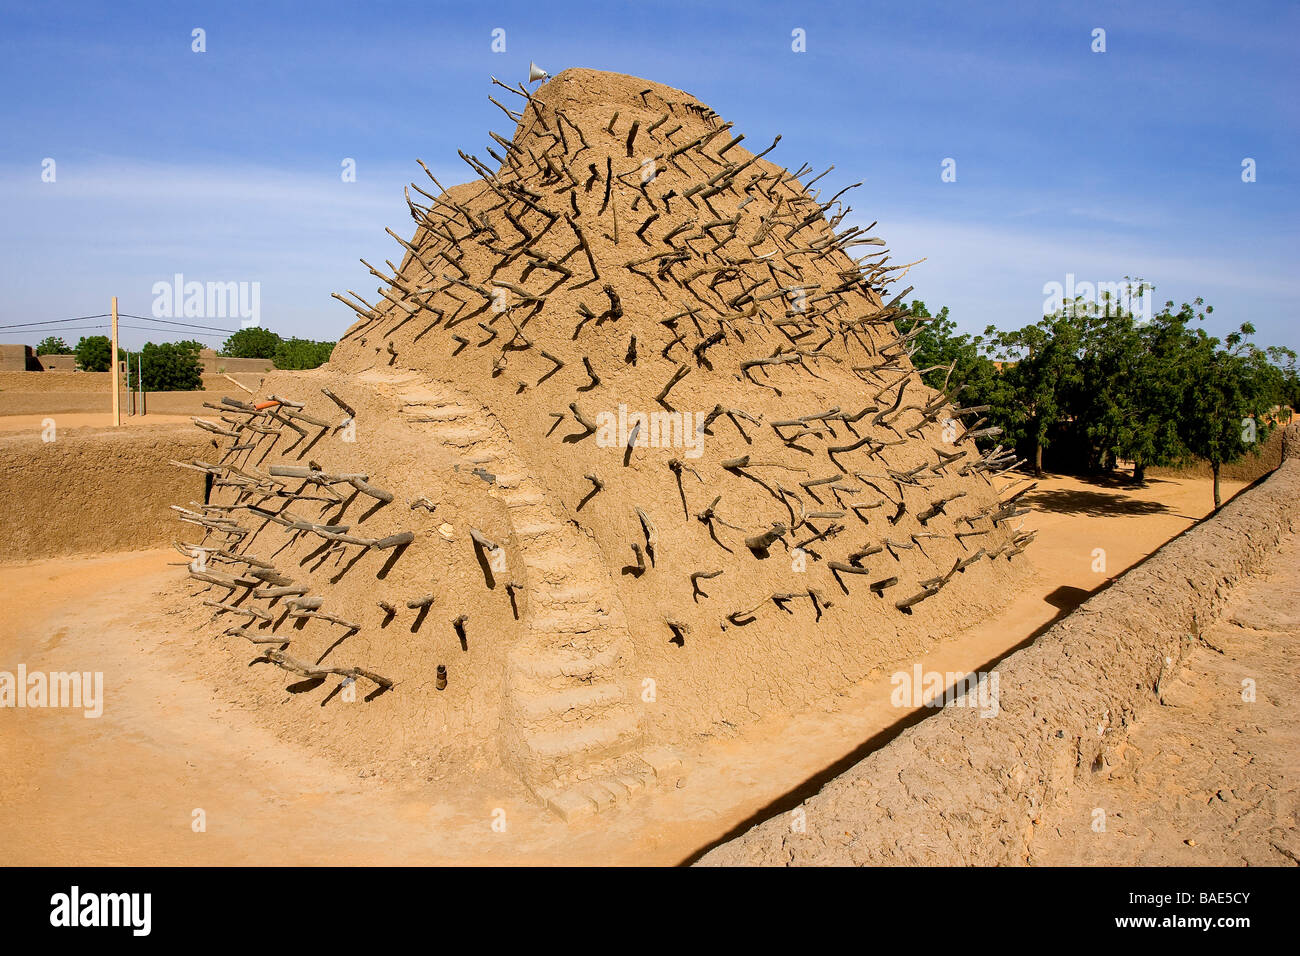 Mali, Gao, la tumba de Askia clasificado como Patrimonio Mundial por la UNESCO Foto de stock